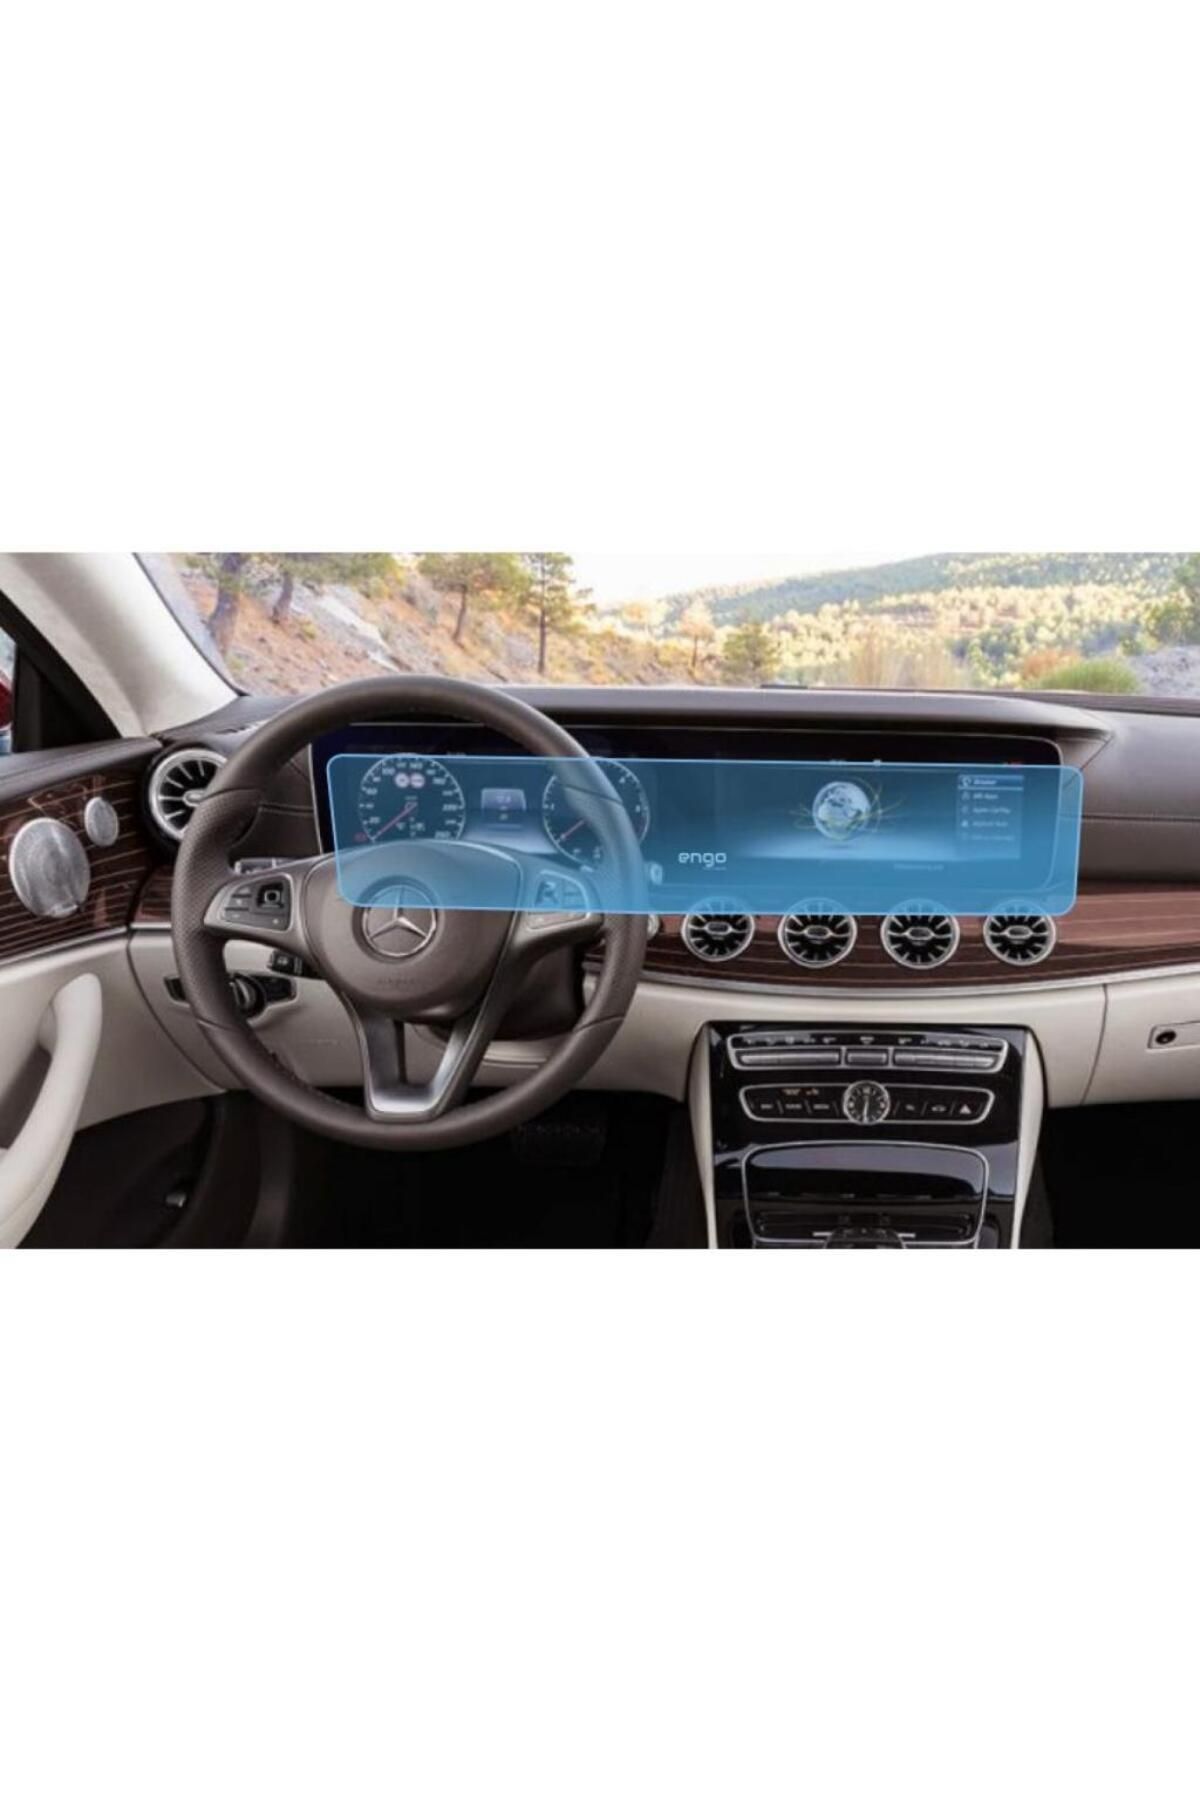 Engo Mercedes G63 Ekran Koruyucu Multimedya Ve Djital Ekran